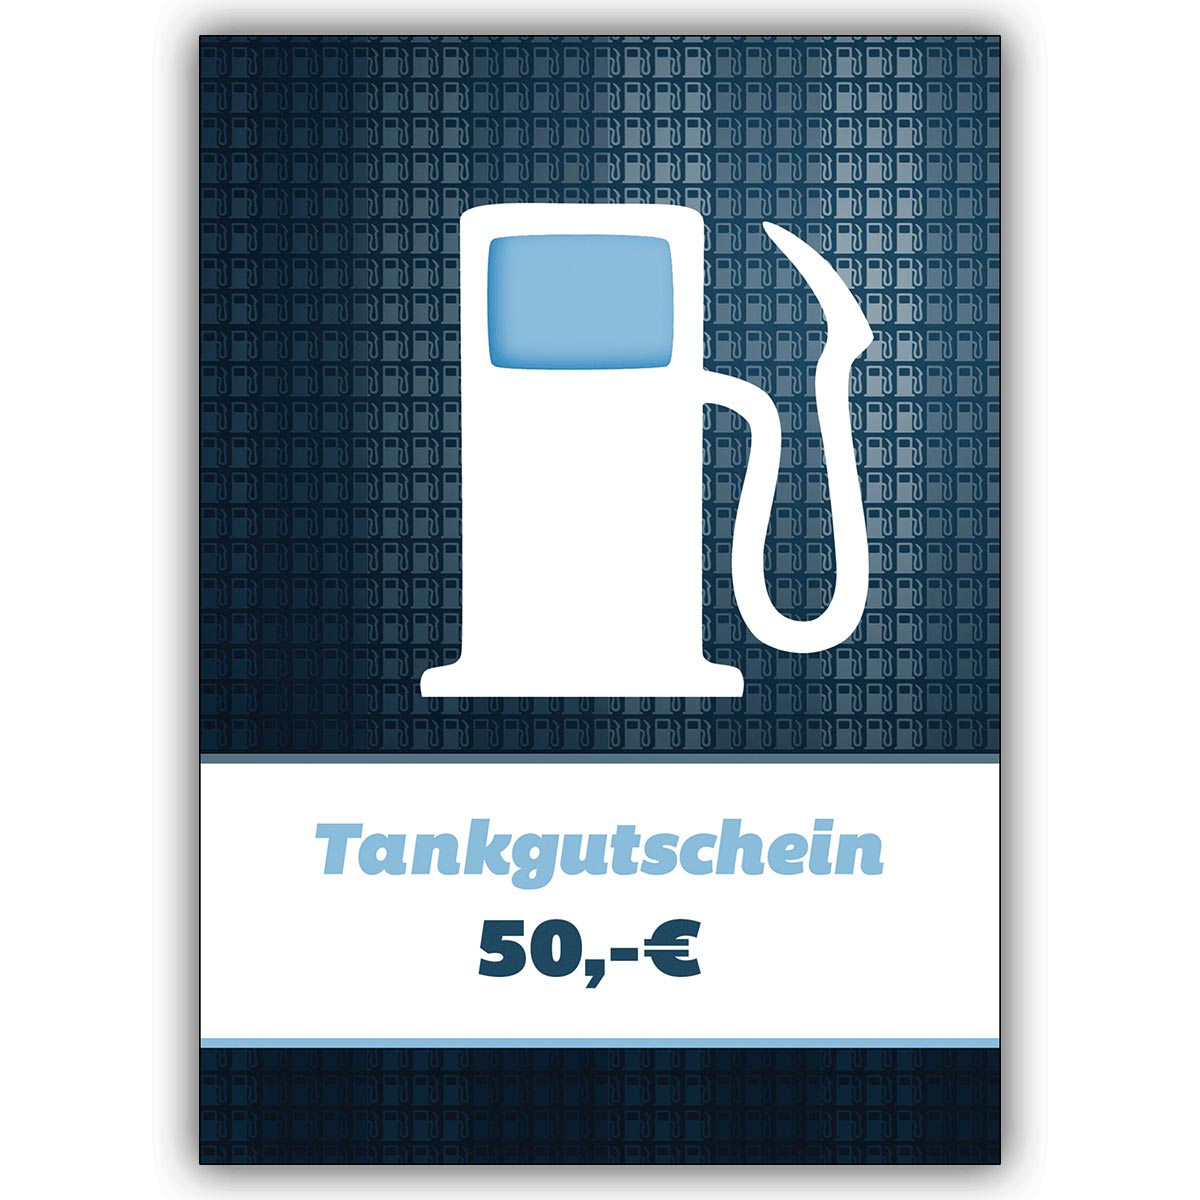 Coole Tankgutschein Grußkarte (Blanko) mit Zapfsäule über 50 Euro zum Führerschein